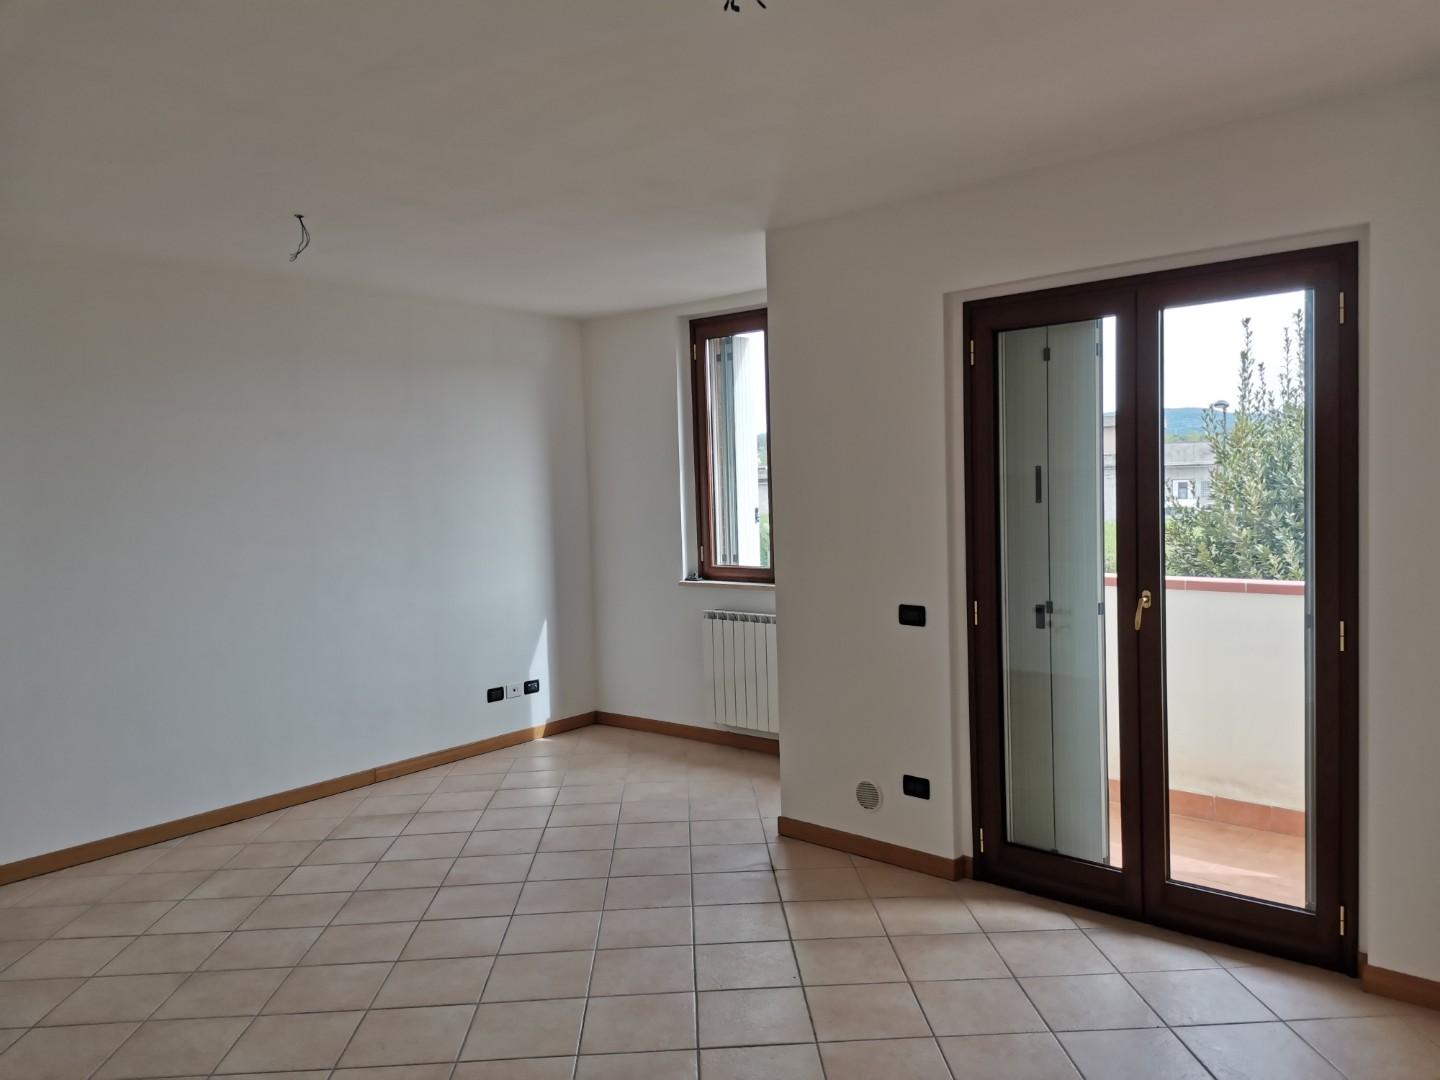 Appartamento in vendita a Colle di Val d'Elsa, 2 locali, prezzo € 125.000 | PortaleAgenzieImmobiliari.it